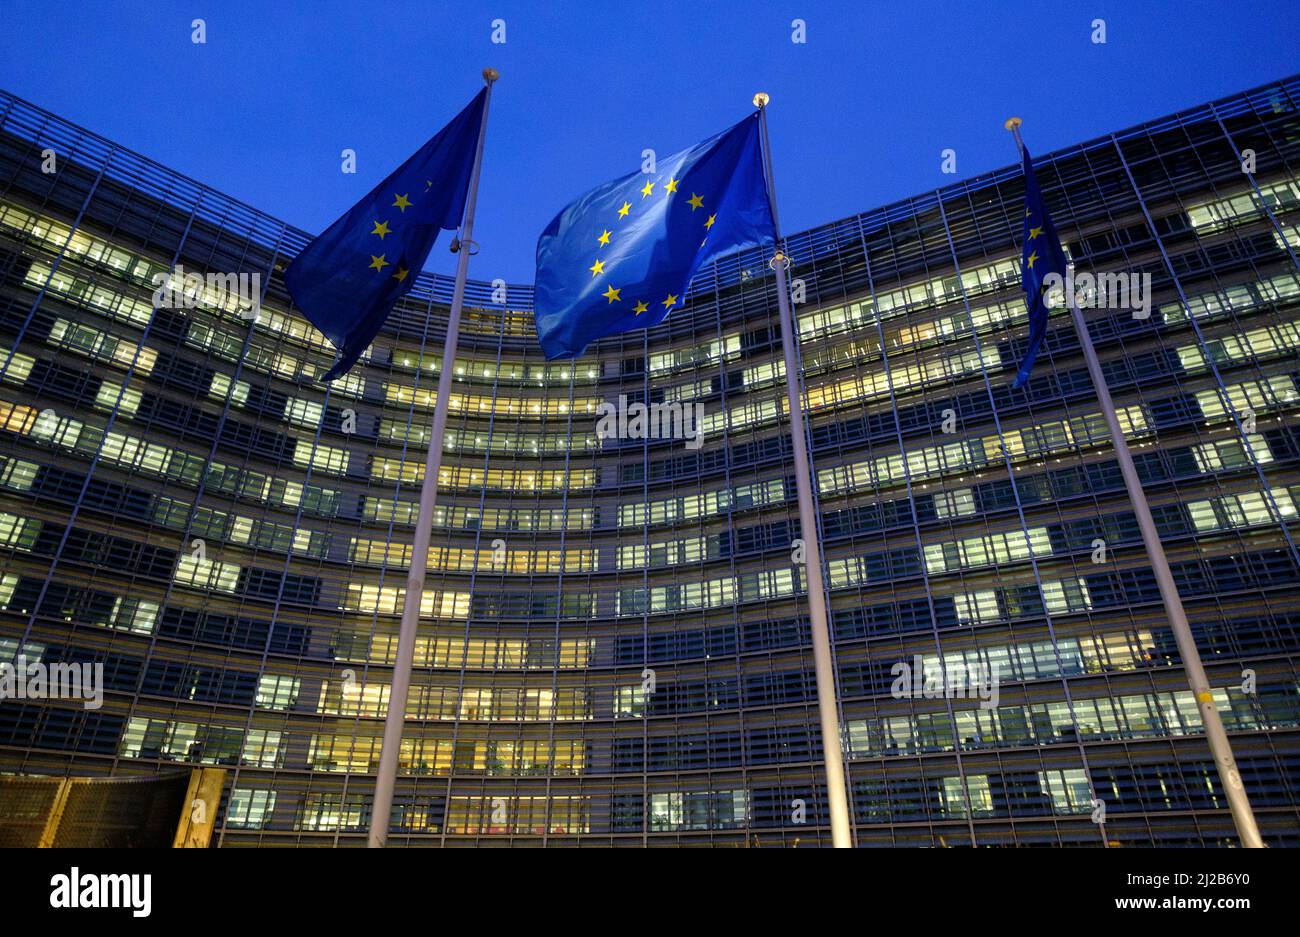 Belgien, Brüssel: Europäische Union Flaggen vor dem Berlaymont-Gebäude, dem Sitz der Europäischen Kommission, am Abend Stockfoto